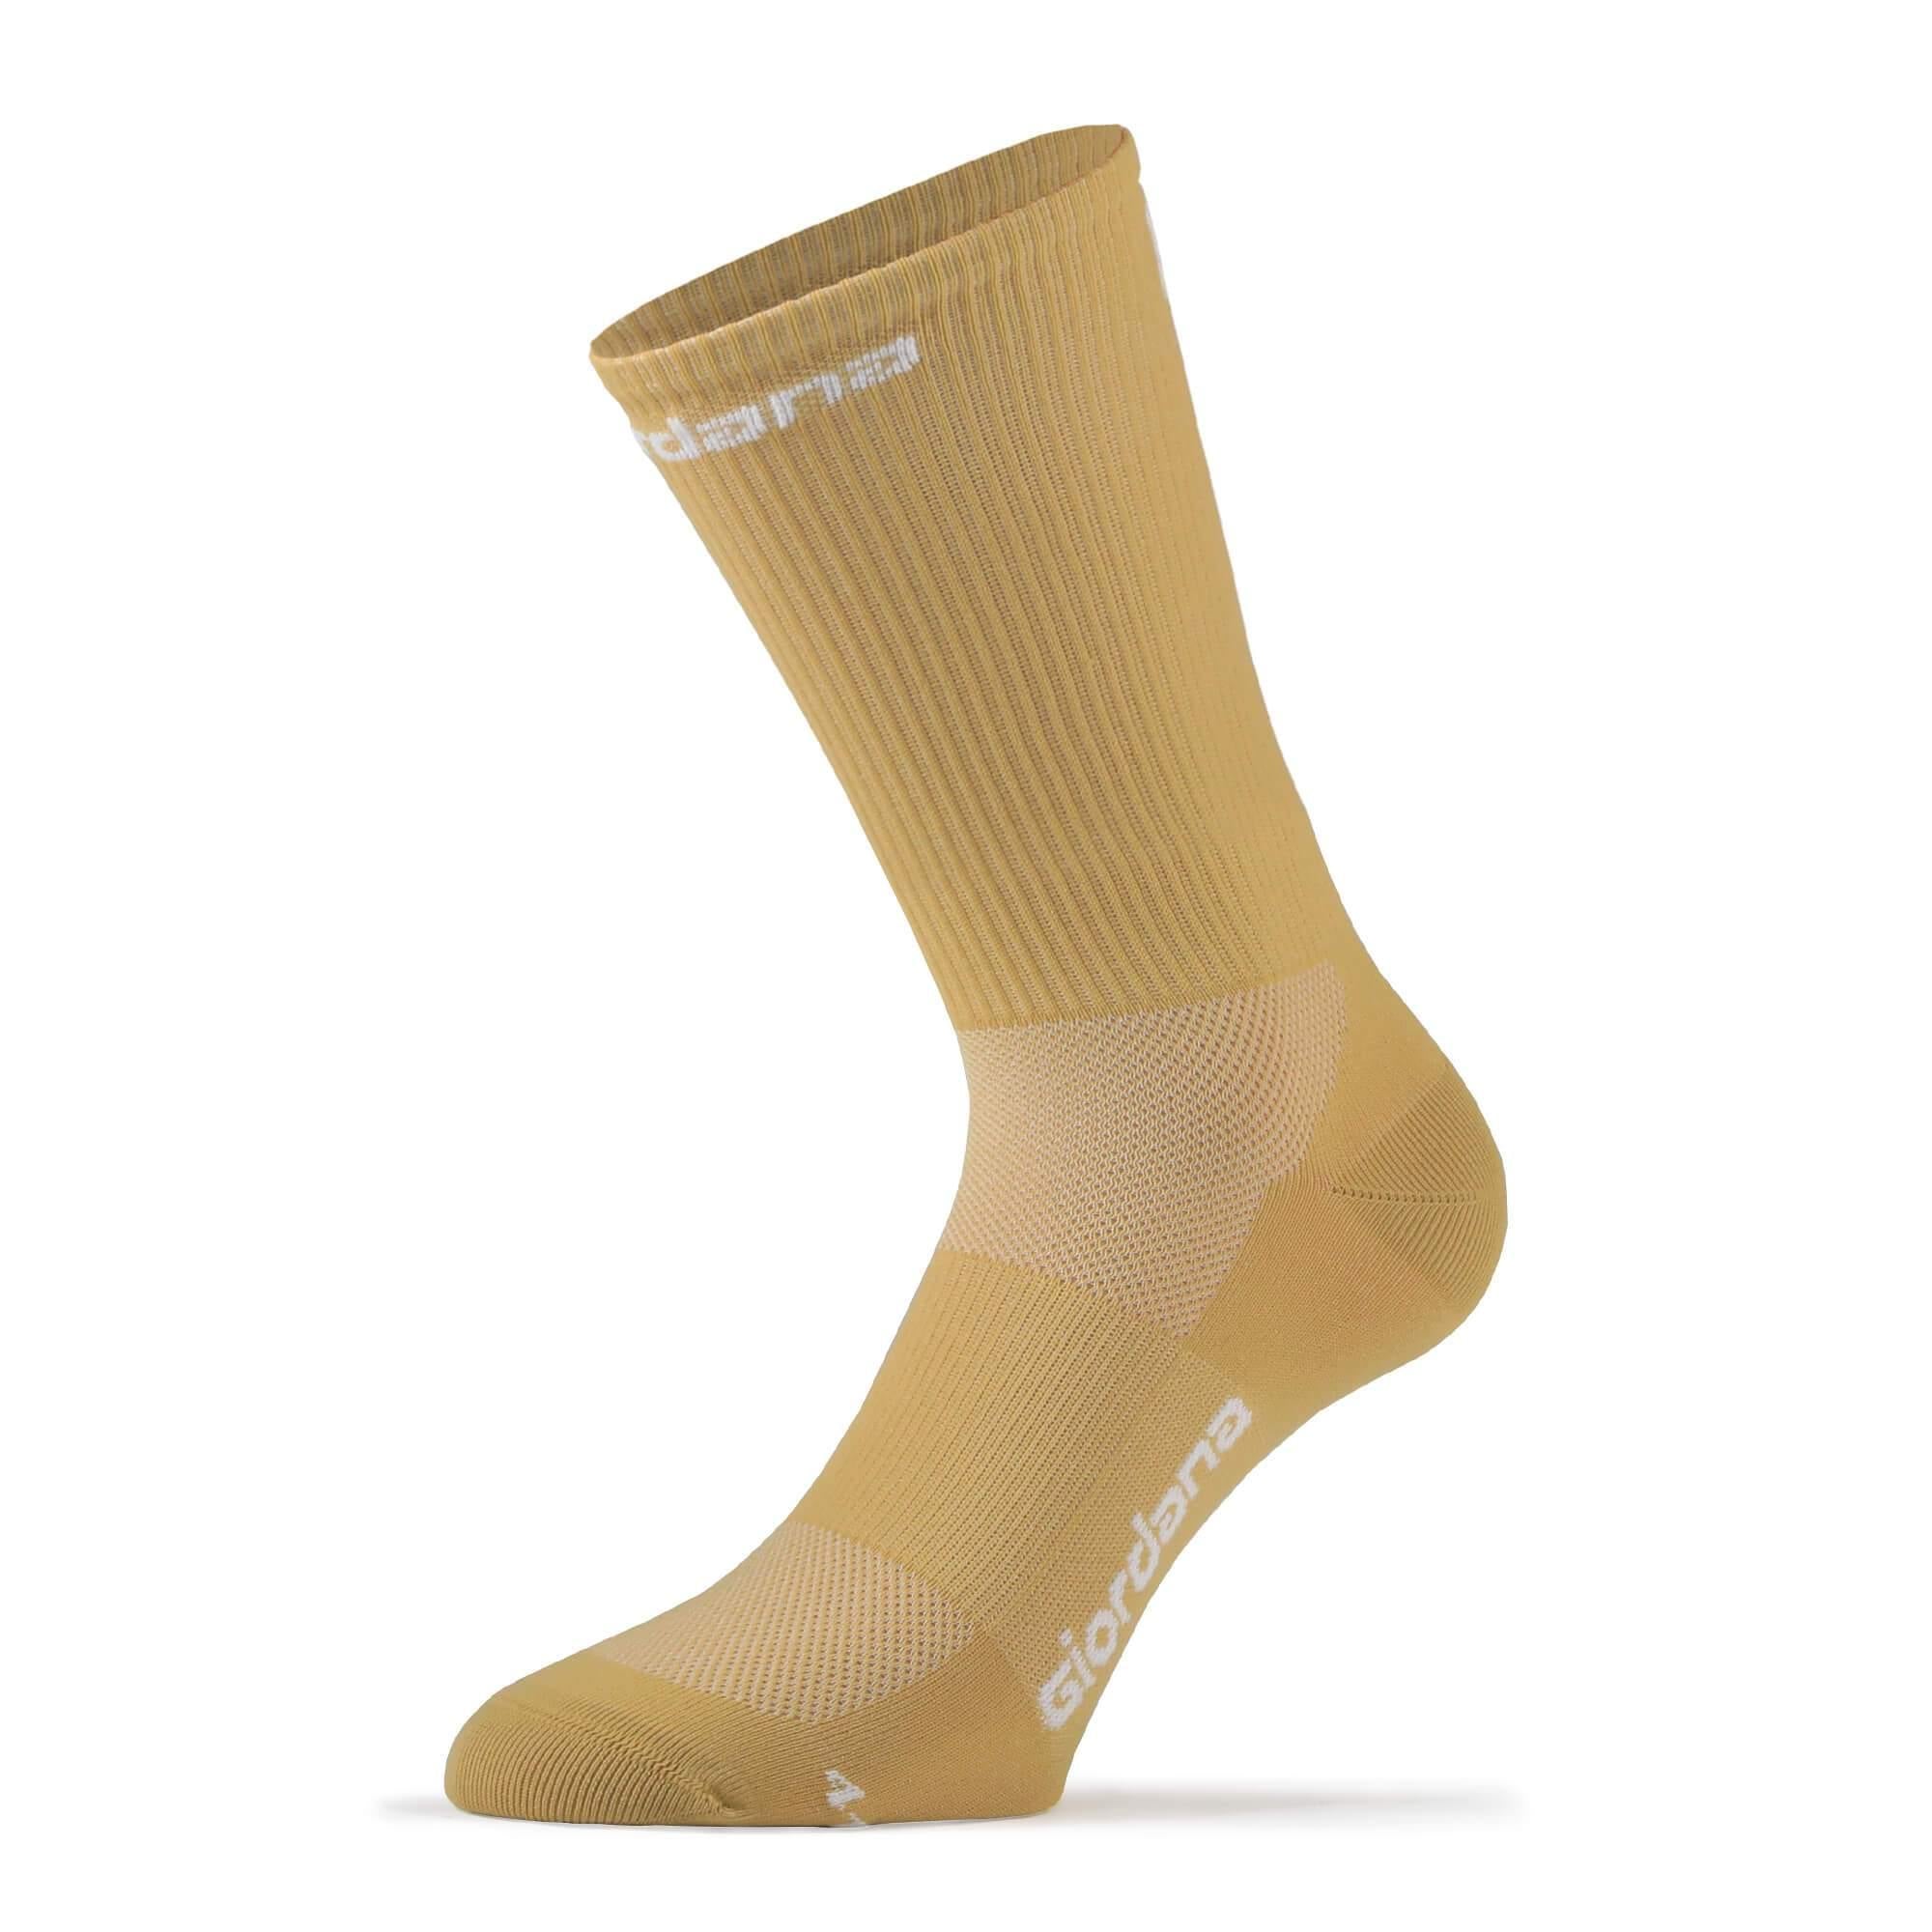 FR-C Tall Socks